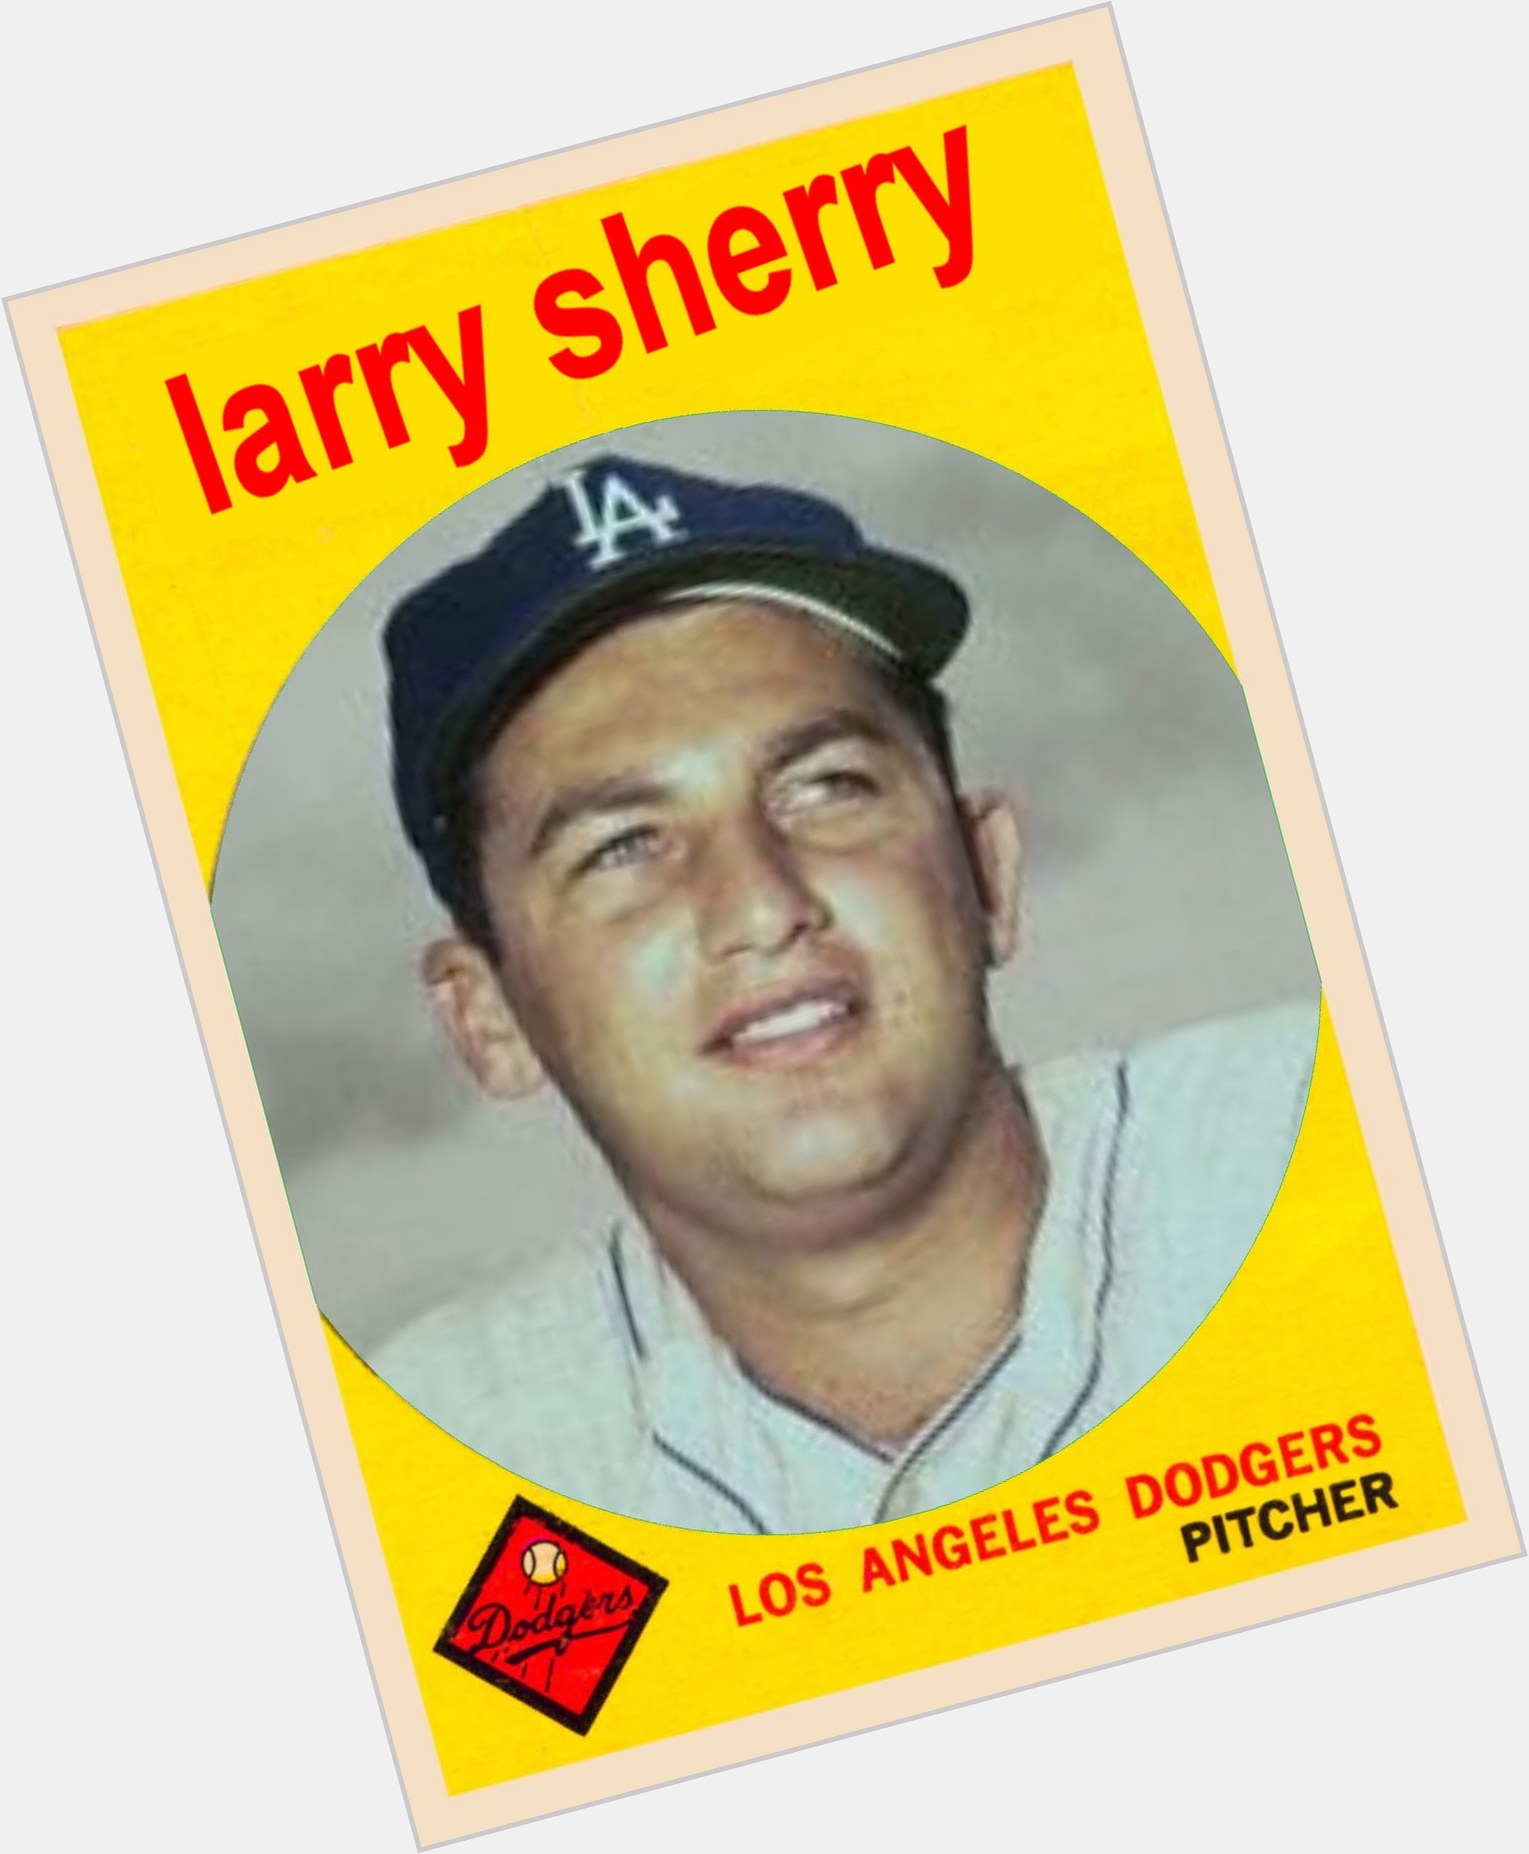 Larry Sherry birthday 2015